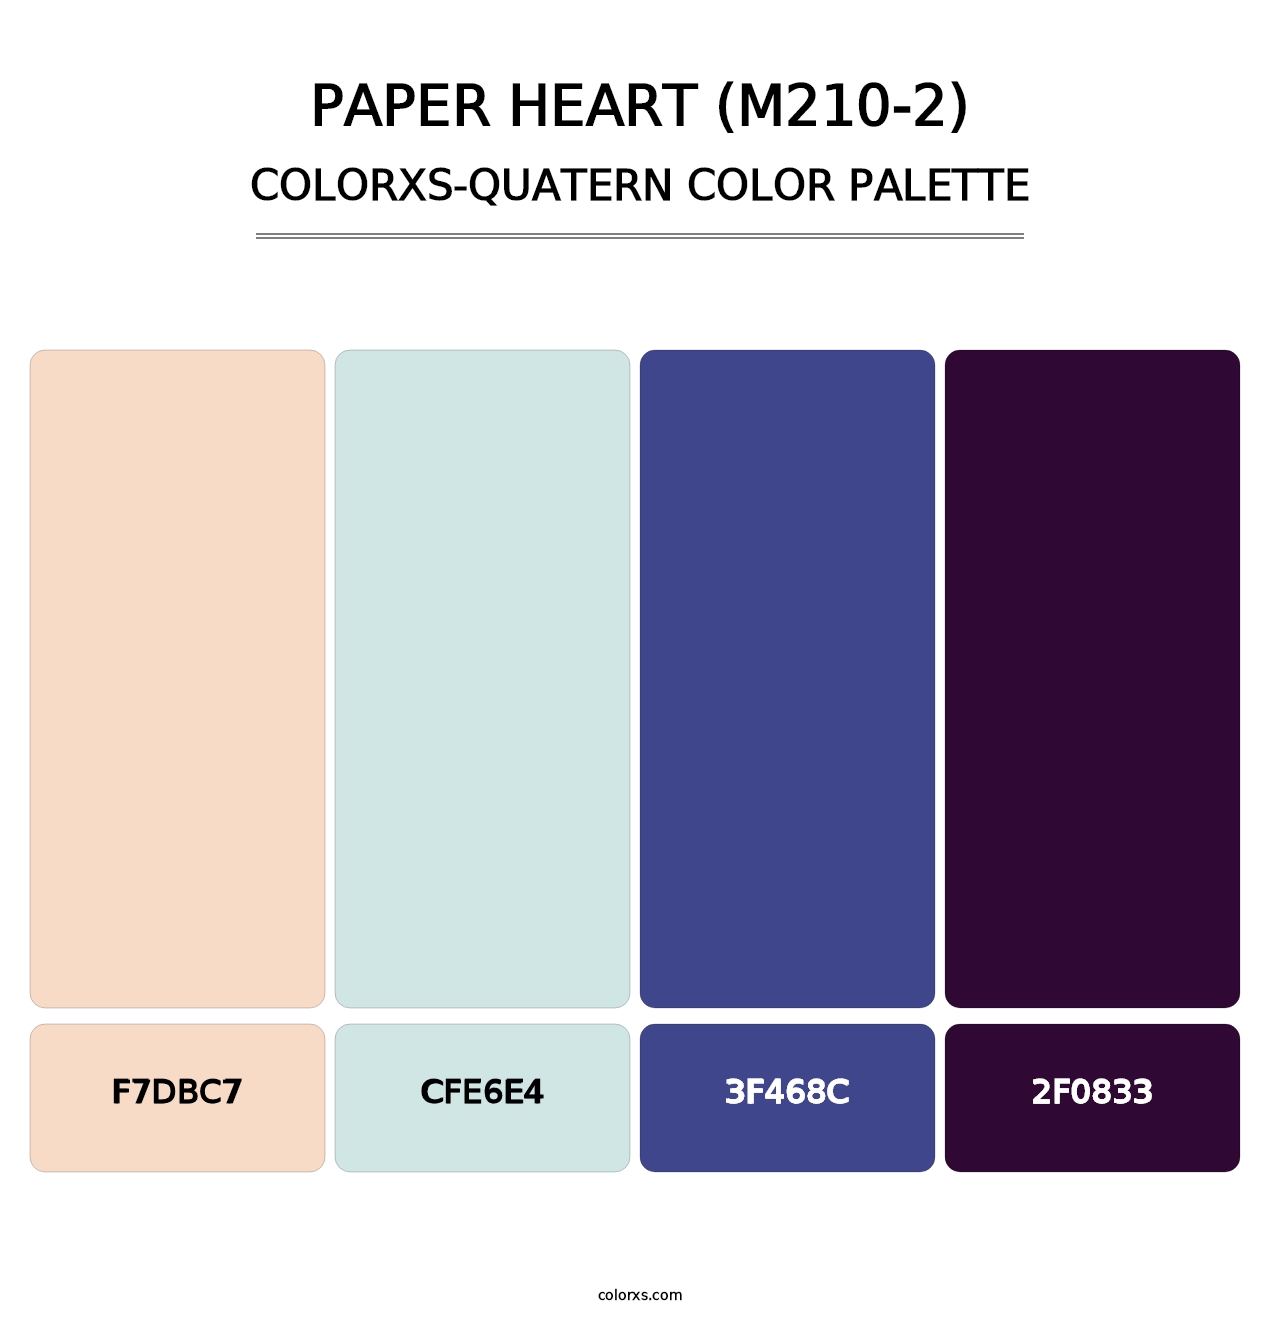 Paper Heart (M210-2) - Colorxs Quatern Palette